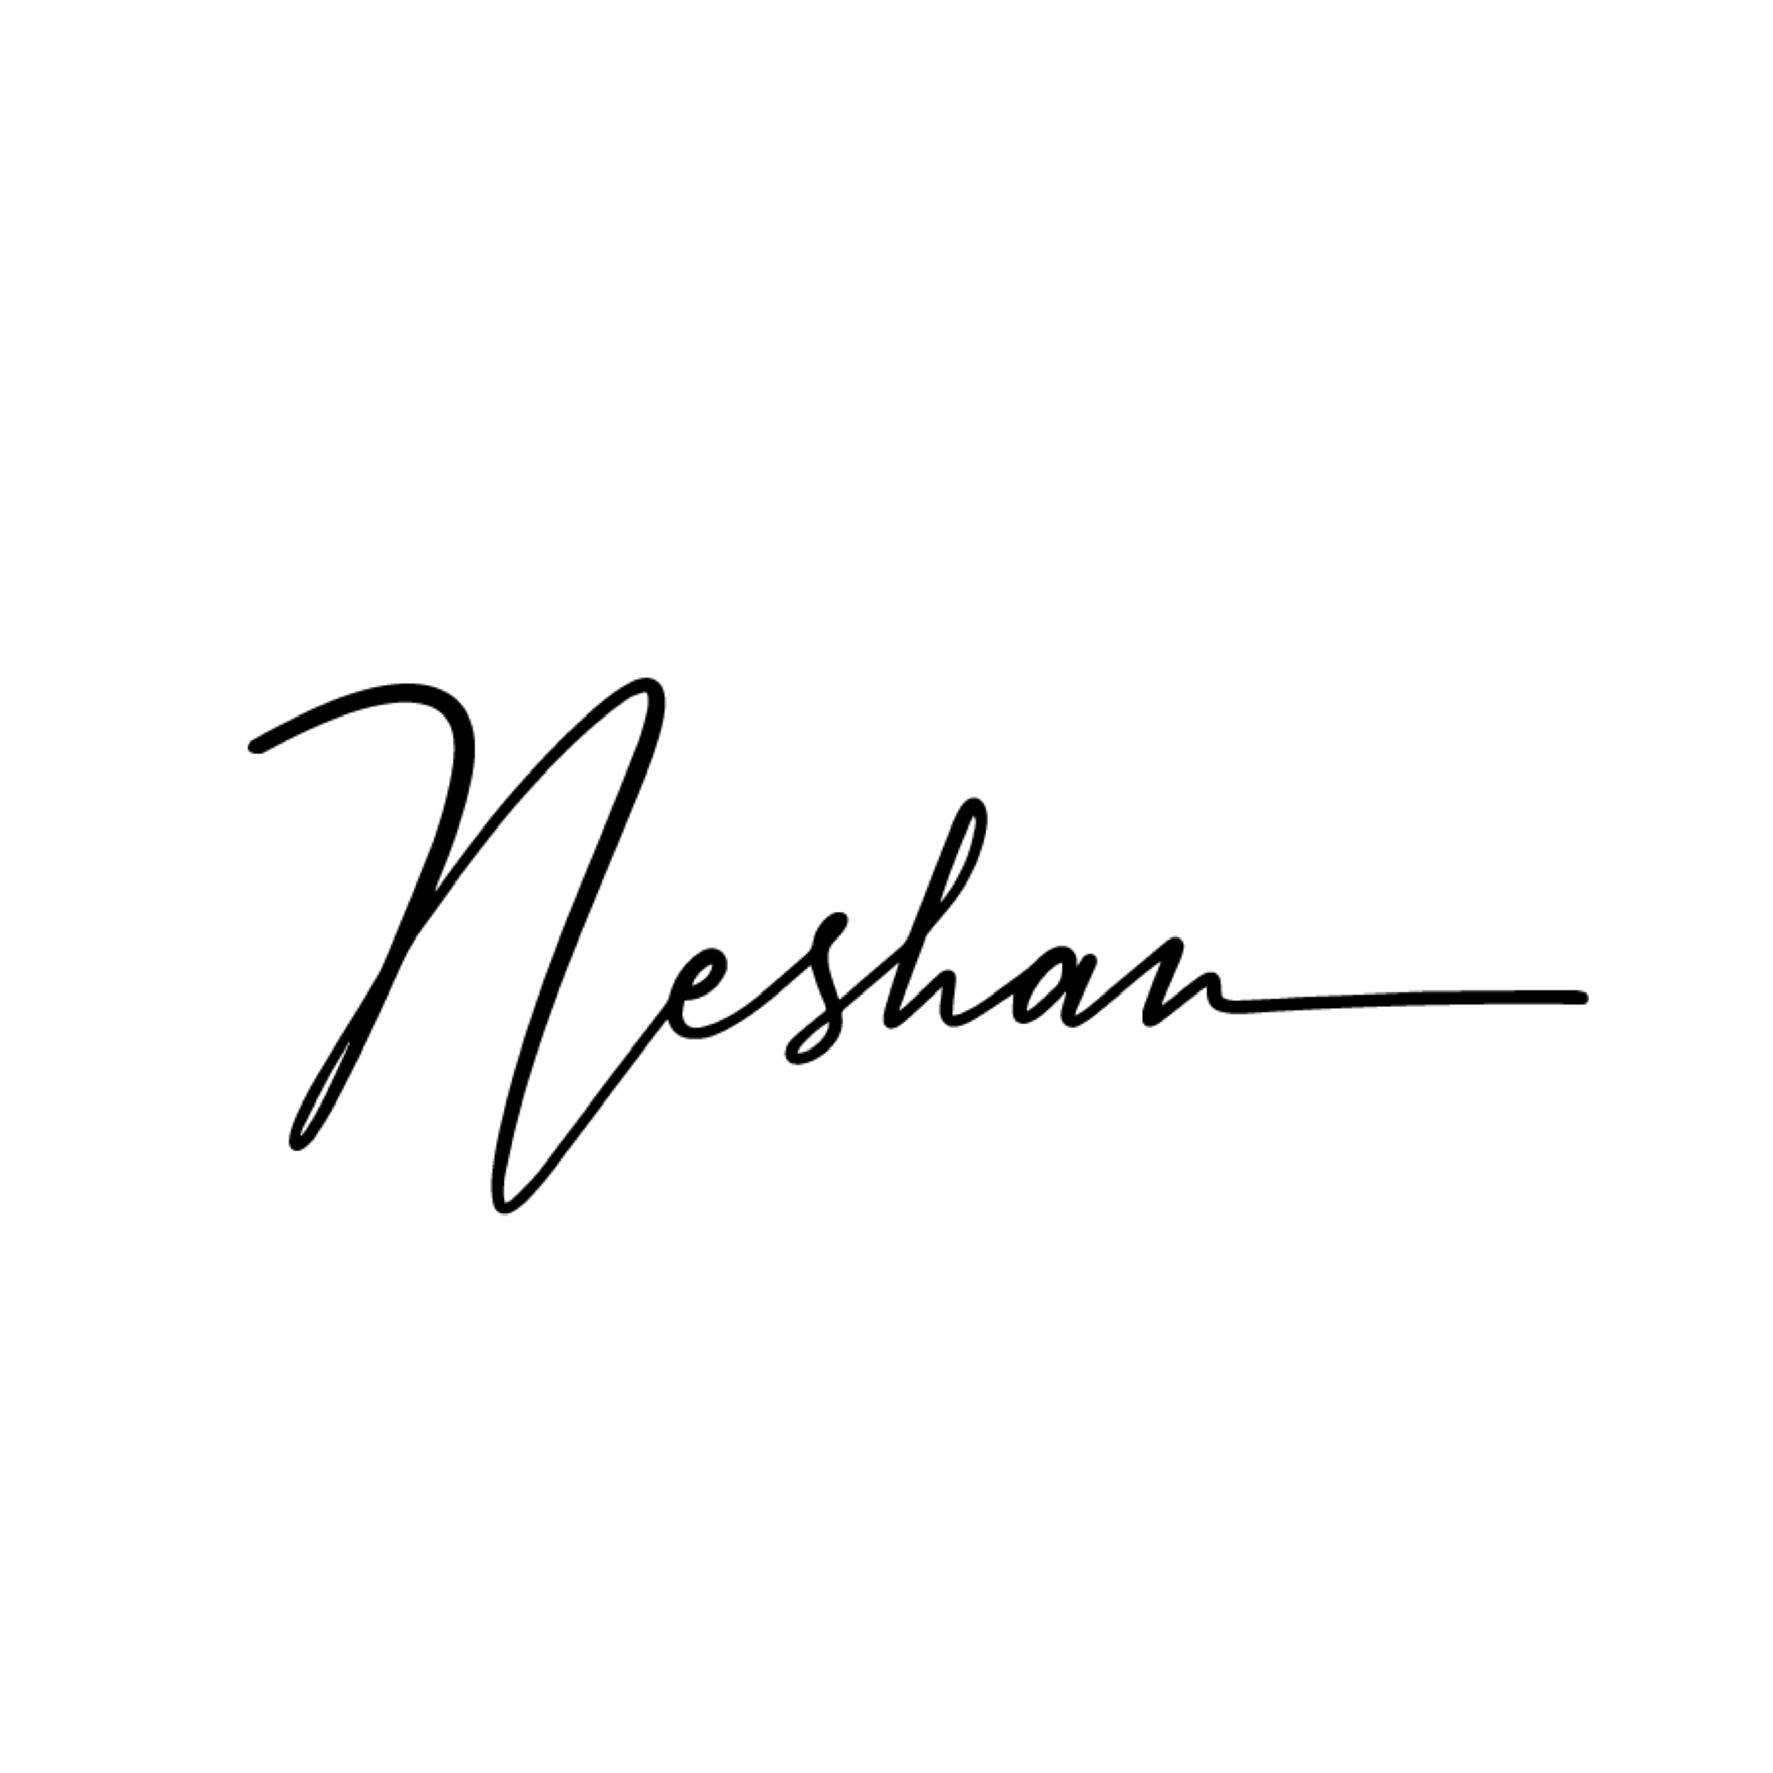 Neshan